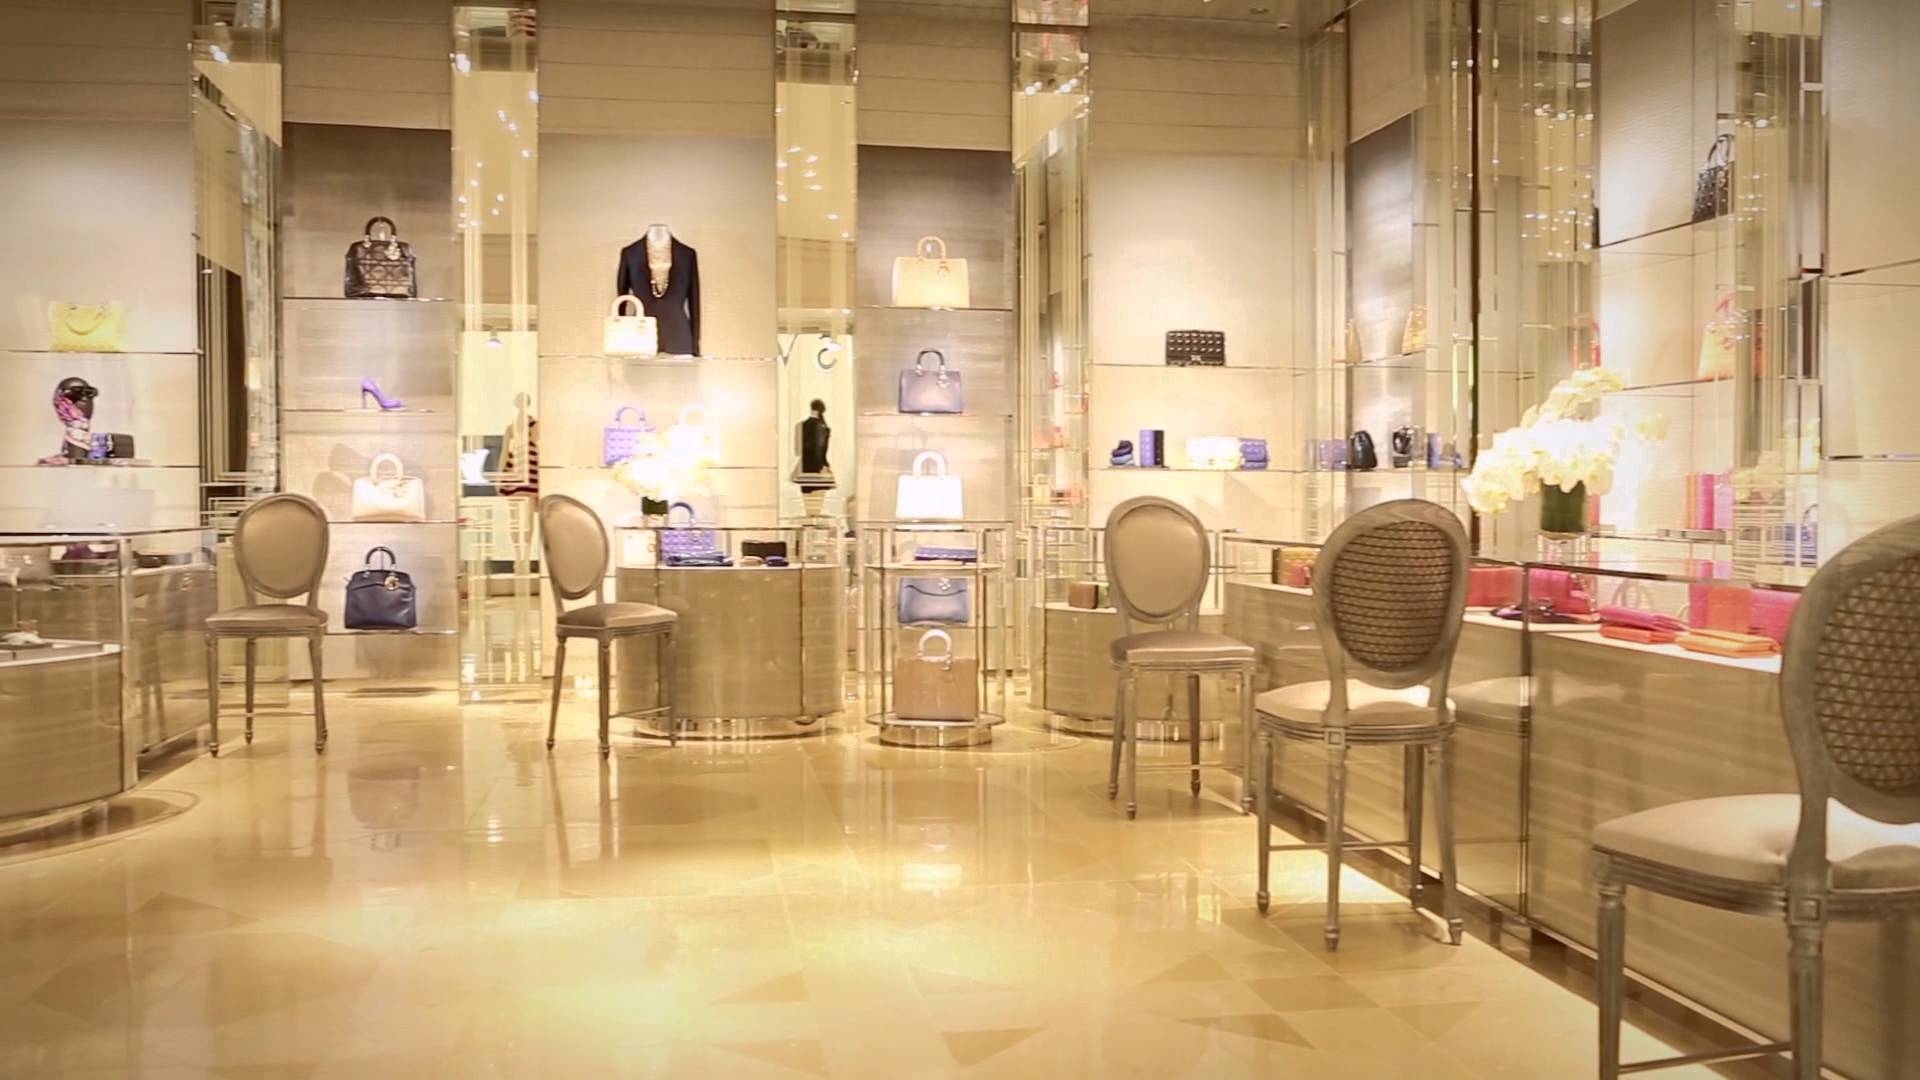 Dior khai trương boutique lớn nhất Việt Nam tại TTTM Vincom  Tạp chí Đẹp